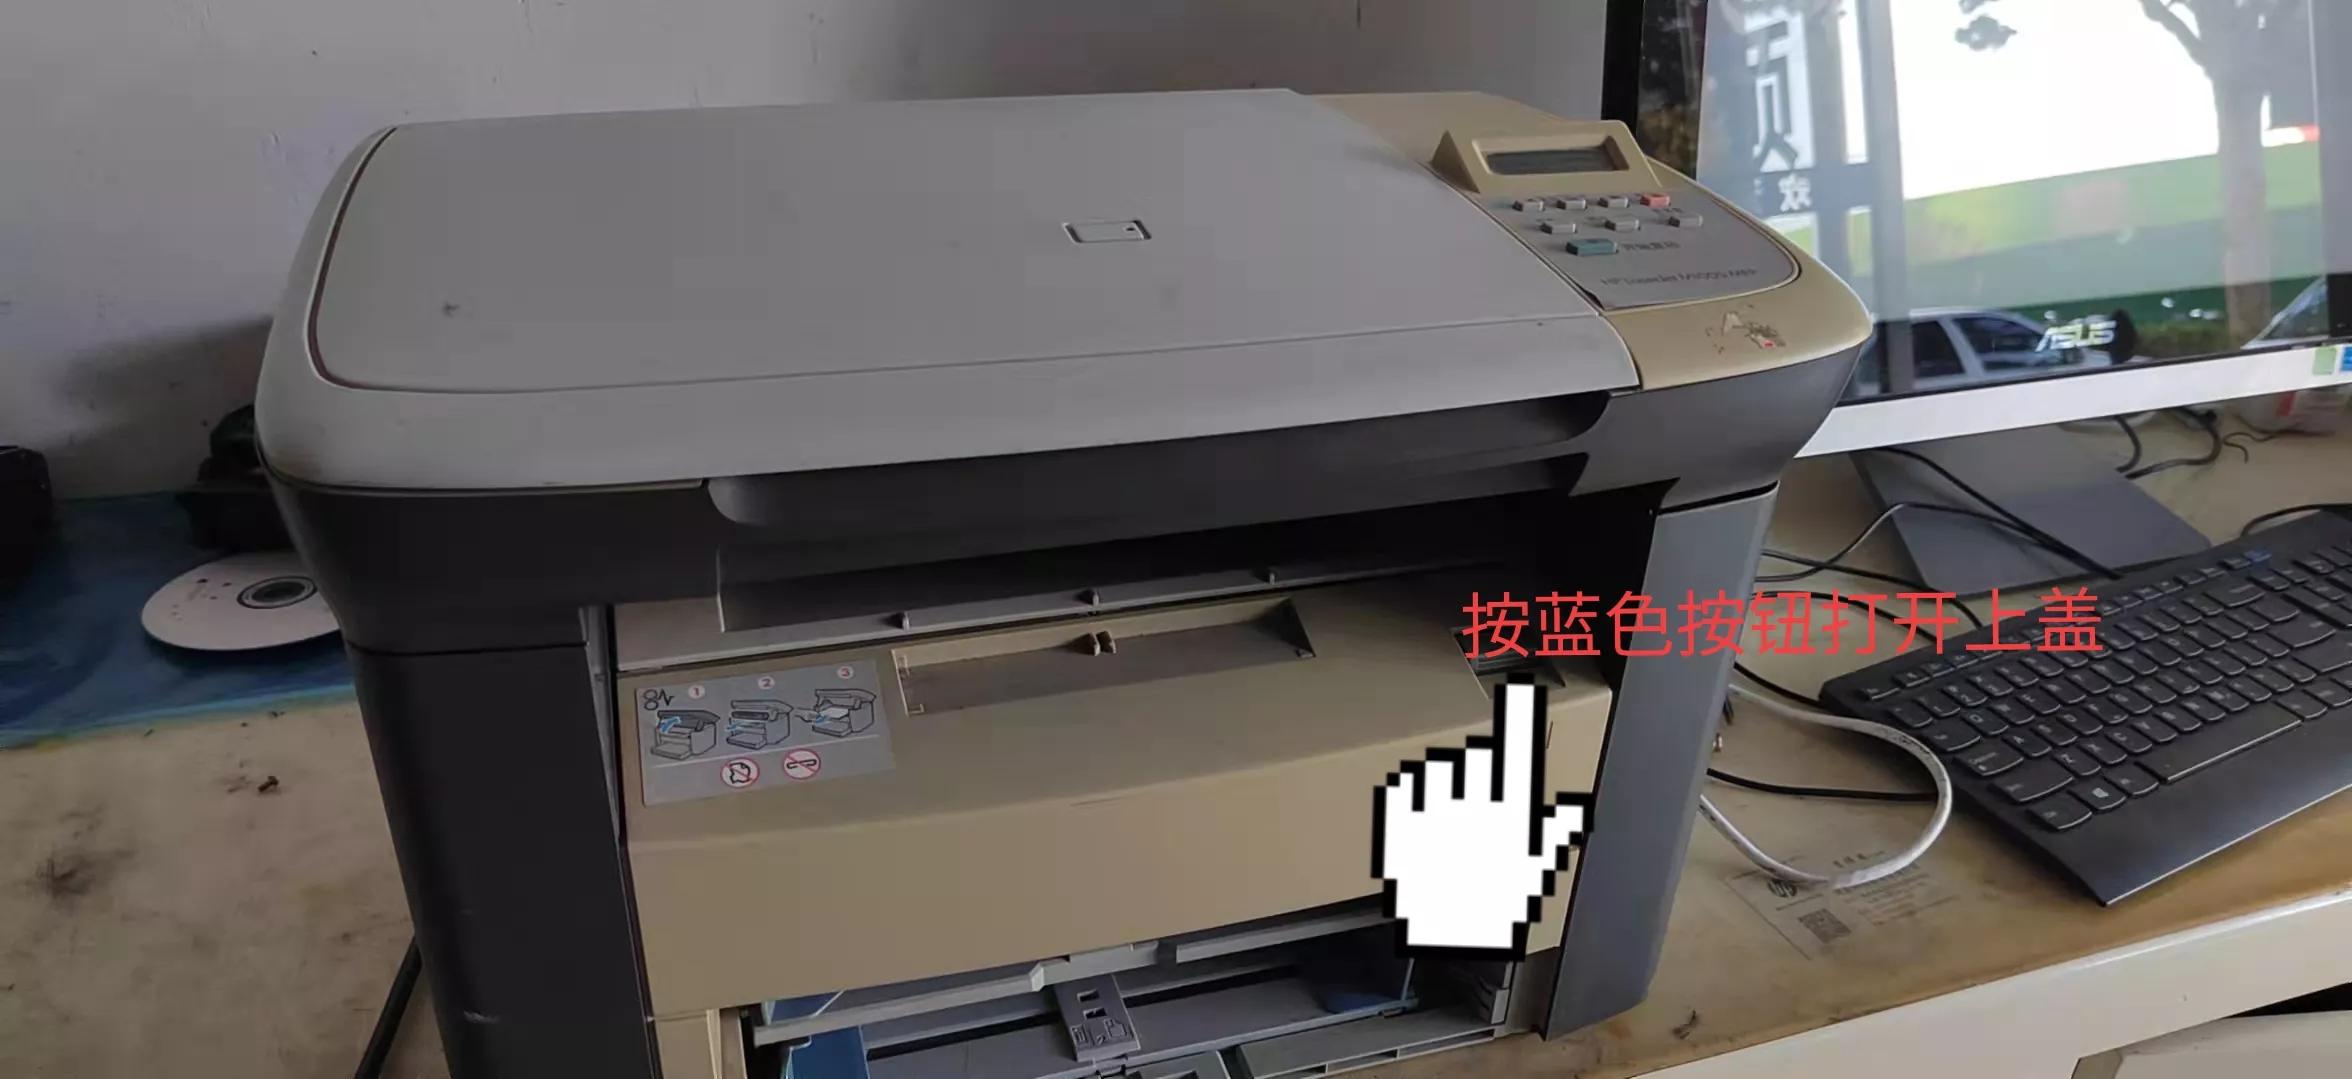 惠普m1005打印机搓不上纸详细解决教程